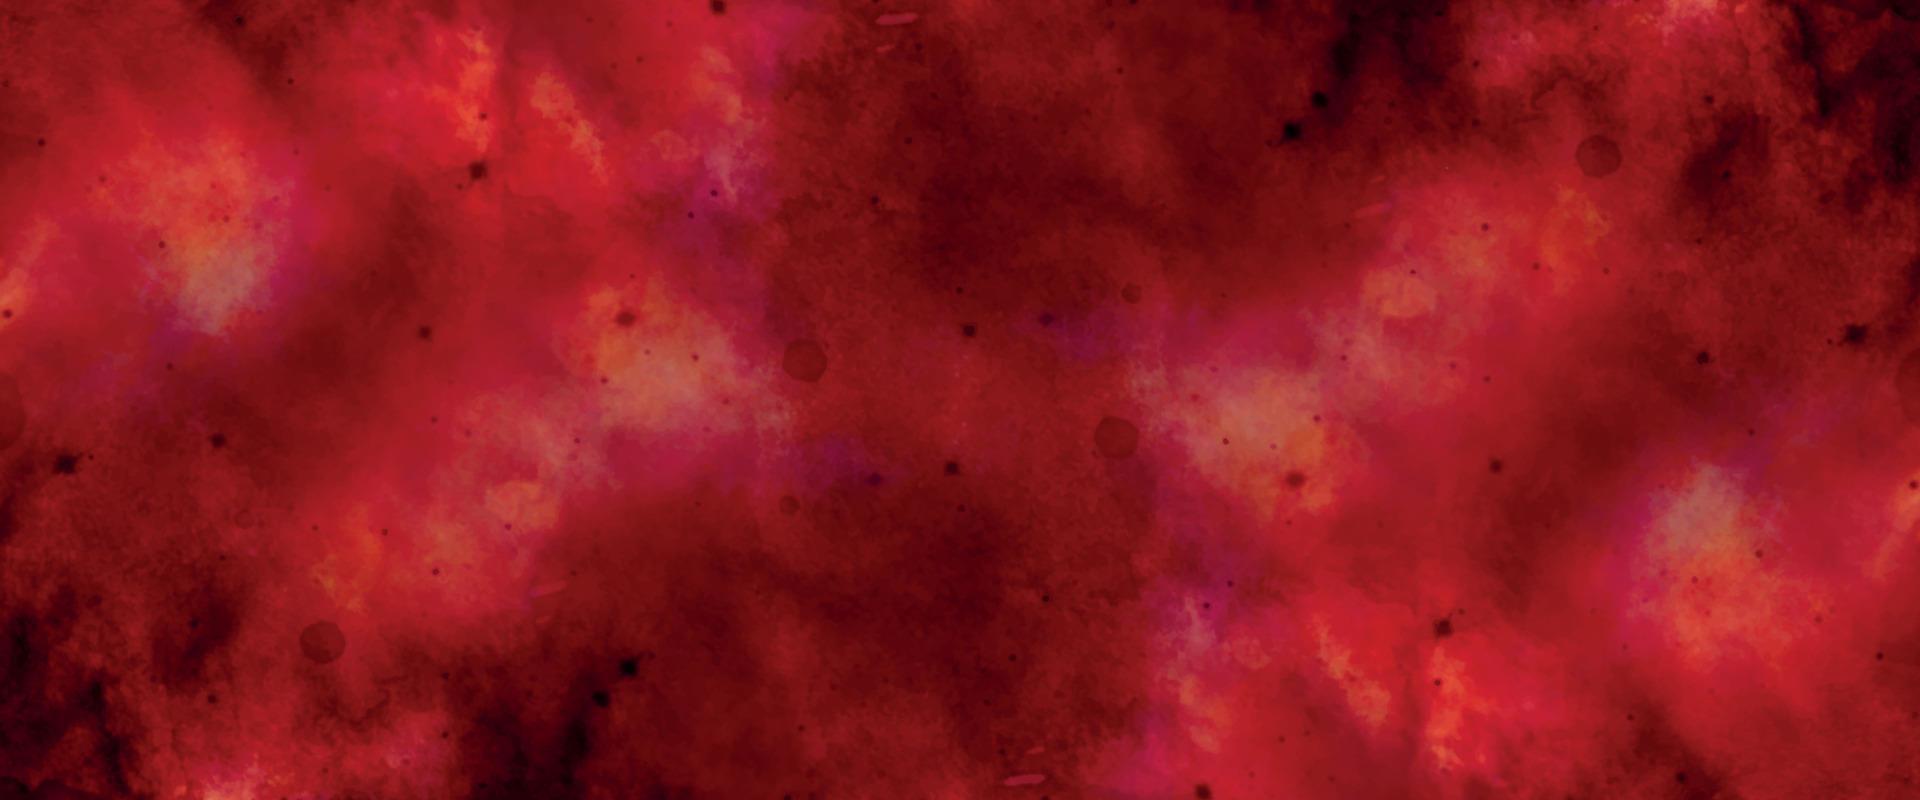 abstrakter roter Aquarellhintergrund. schwarzer und roter Steinhintergrund. rote Grunge-Textur Steinmauer Hintergrund. aquarell galaxie himmel hintergrund. brennende Kohlen und Rissoberfläche. alte Wandstruktur. vektor